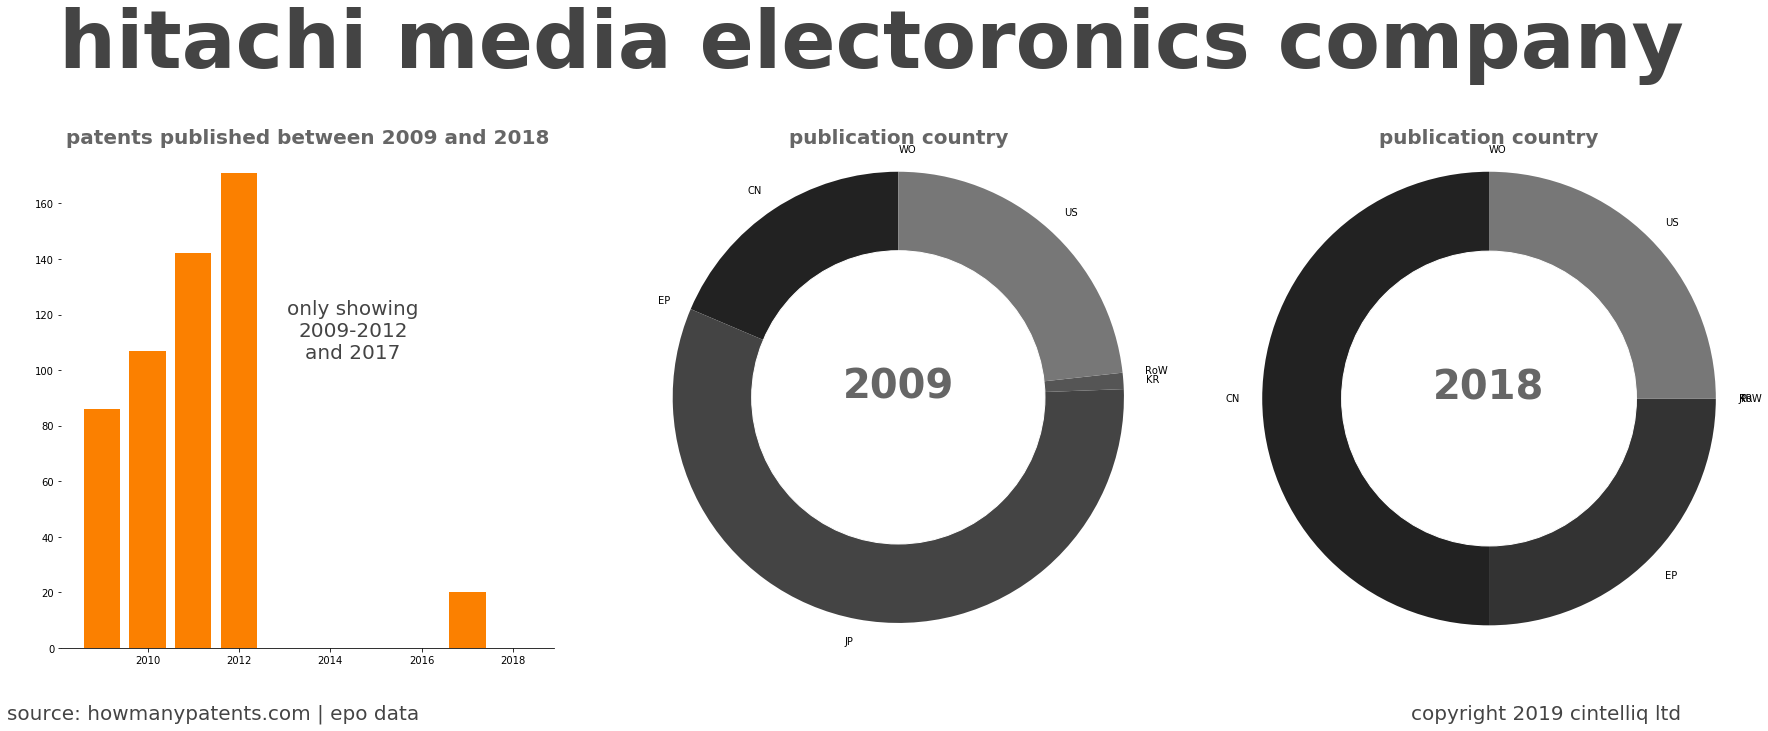 summary of patents for Hitachi Media Electoronics Company